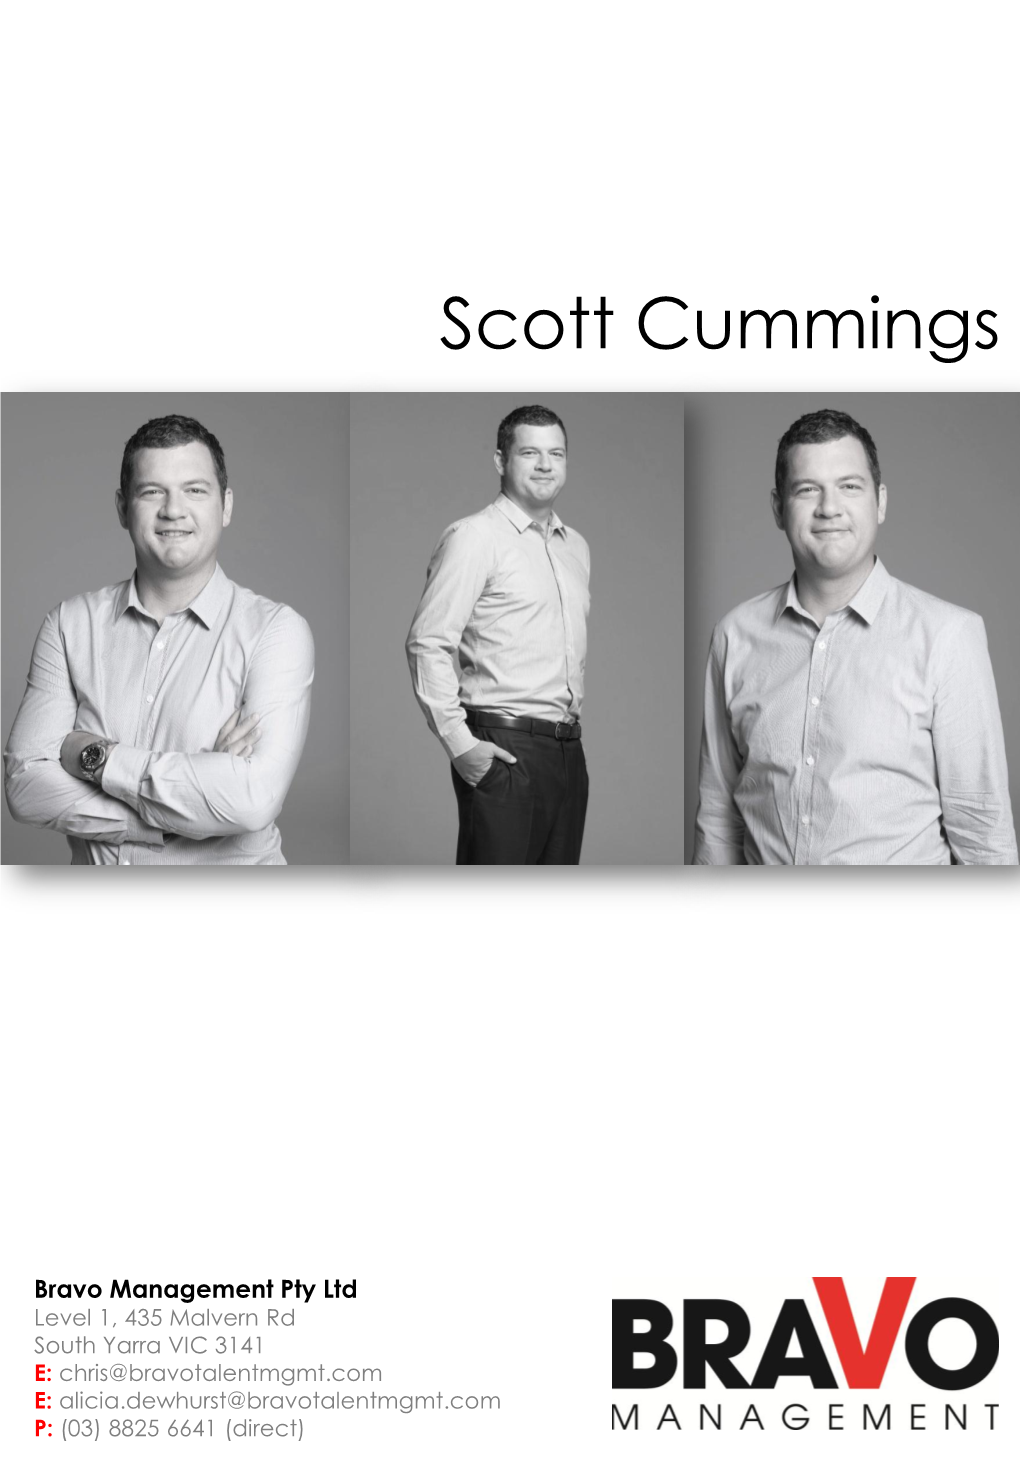 Scott Cummings